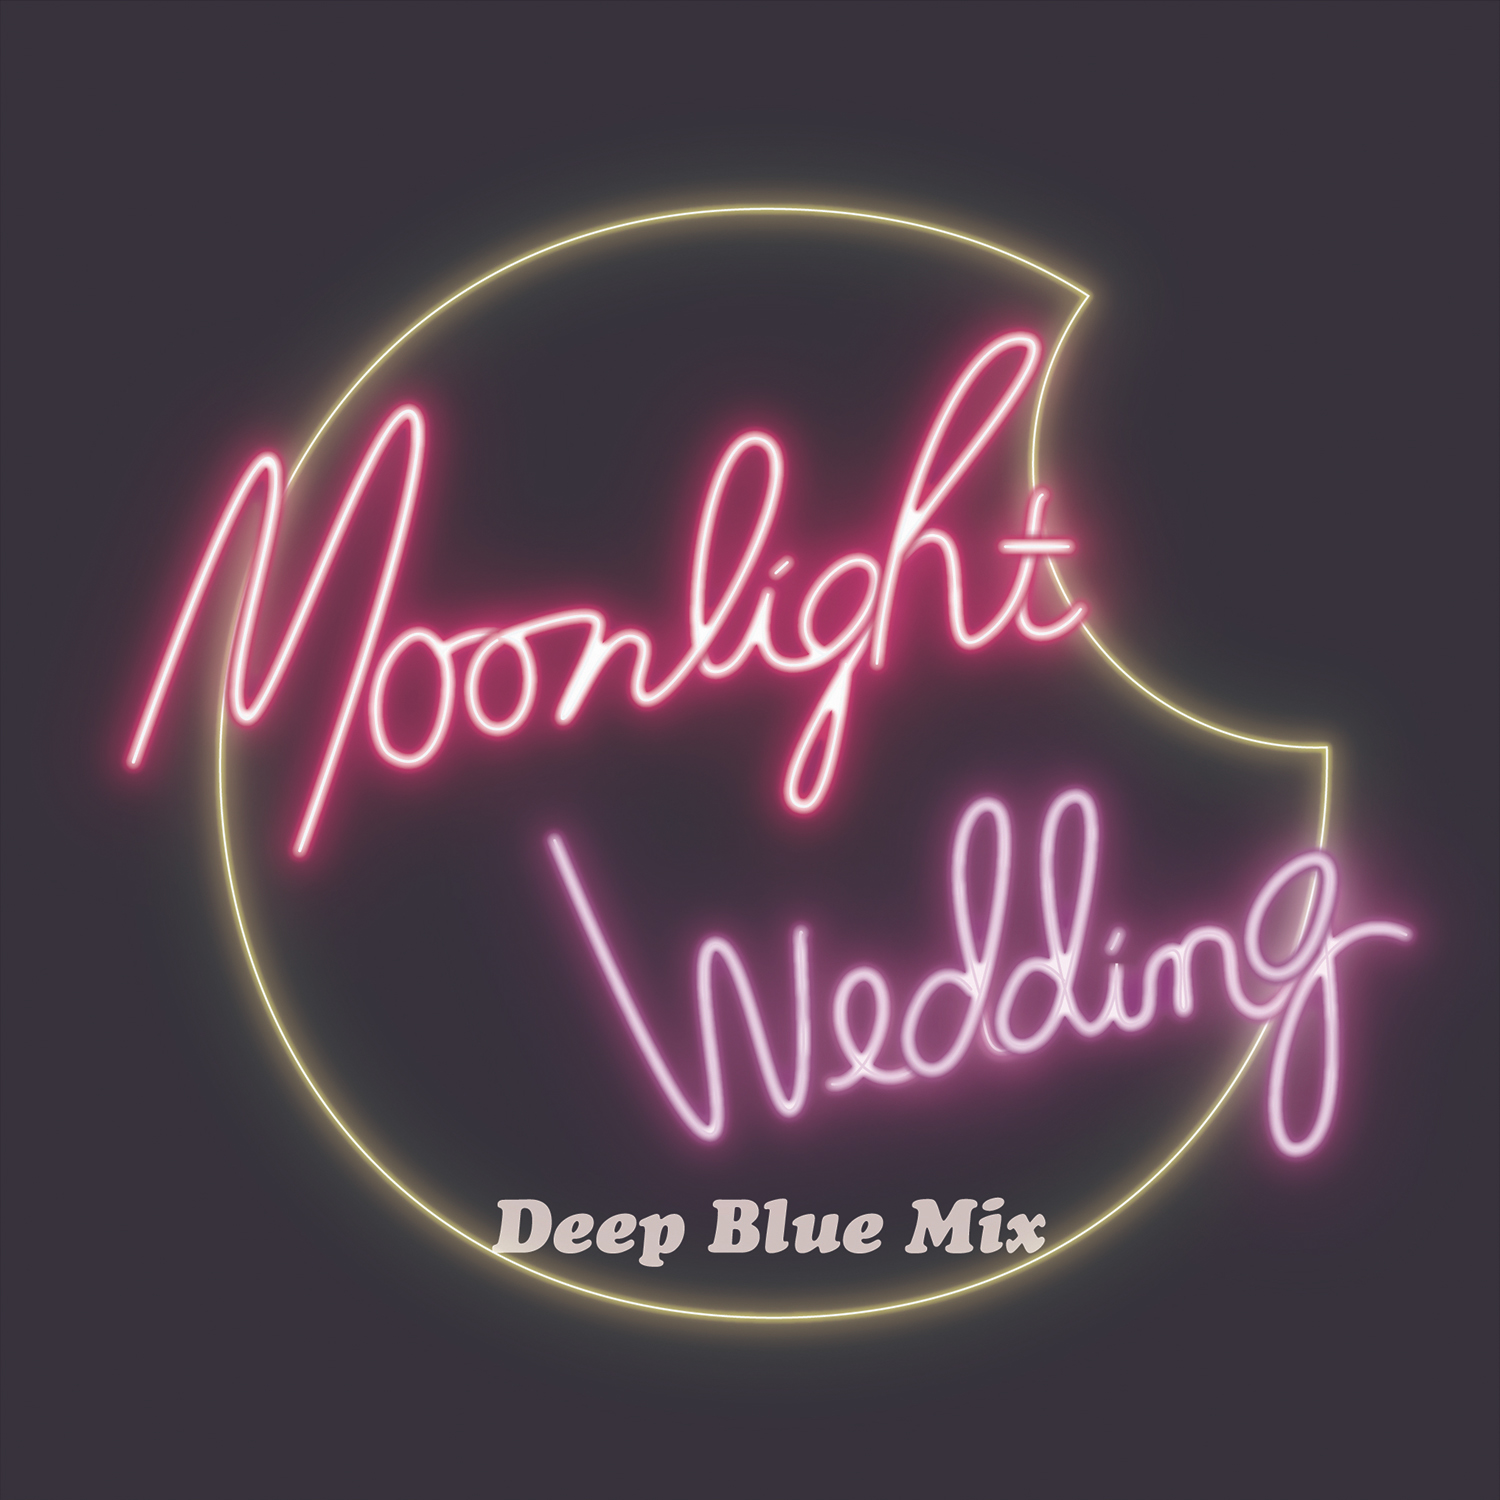 「Moonlight Wedding (Deep Blue Mix)」